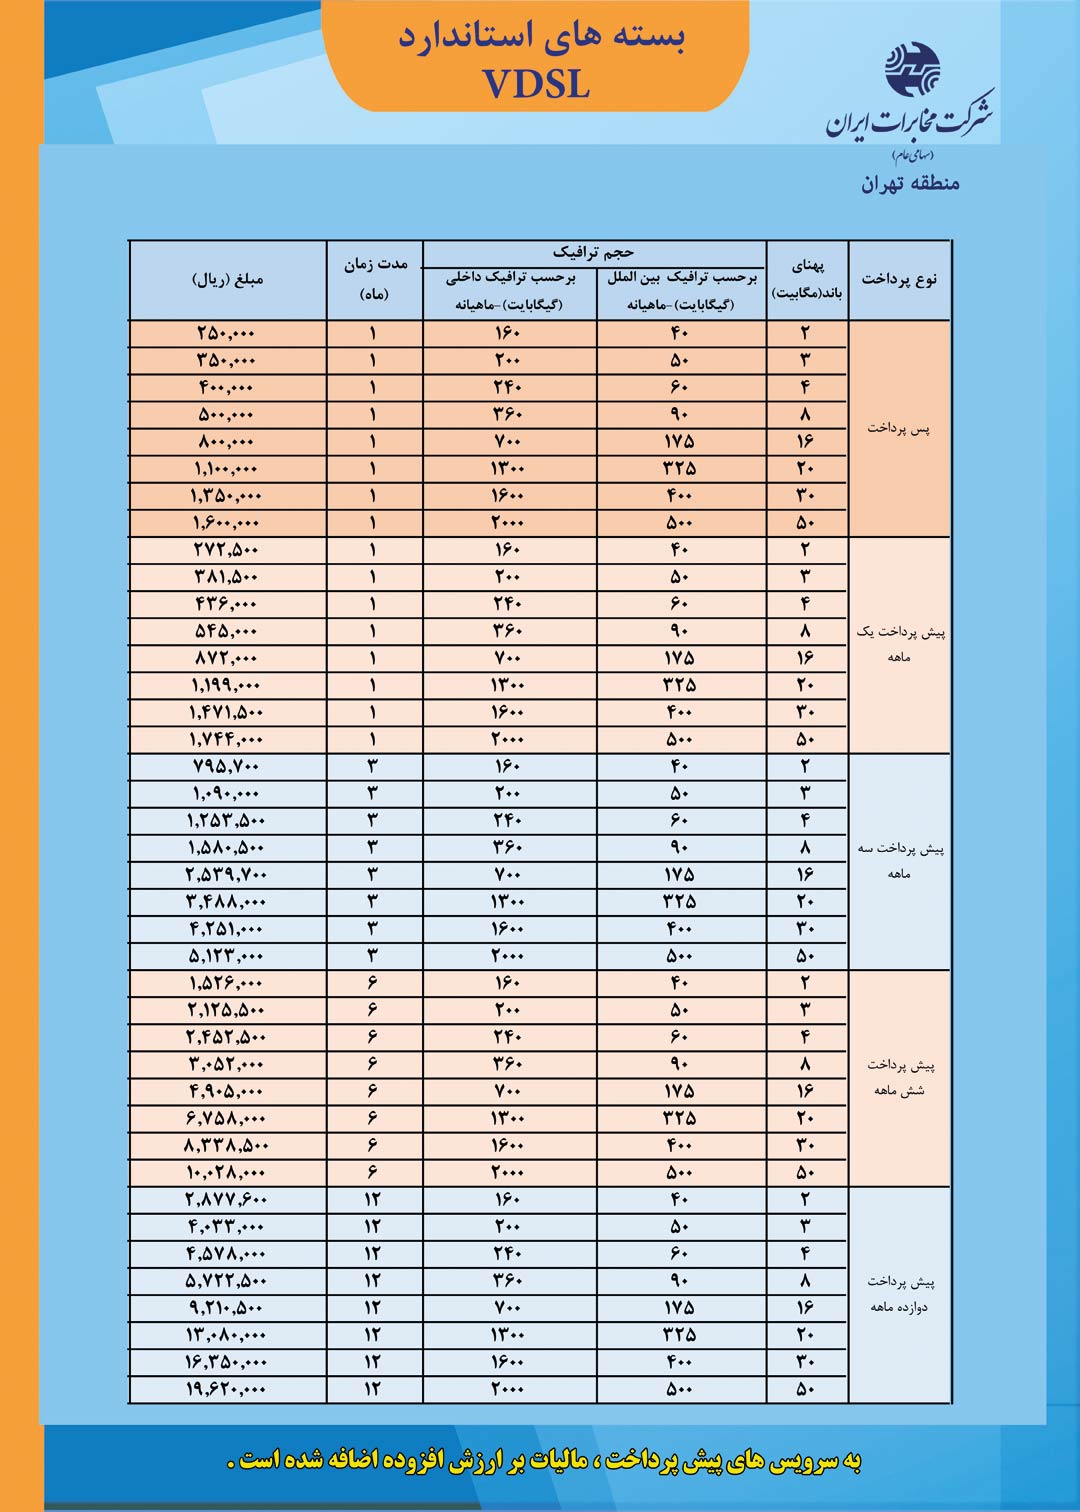 آشنایی با اینترنت VDSL مخابرات + جدول قیمت و جزئیات طرح